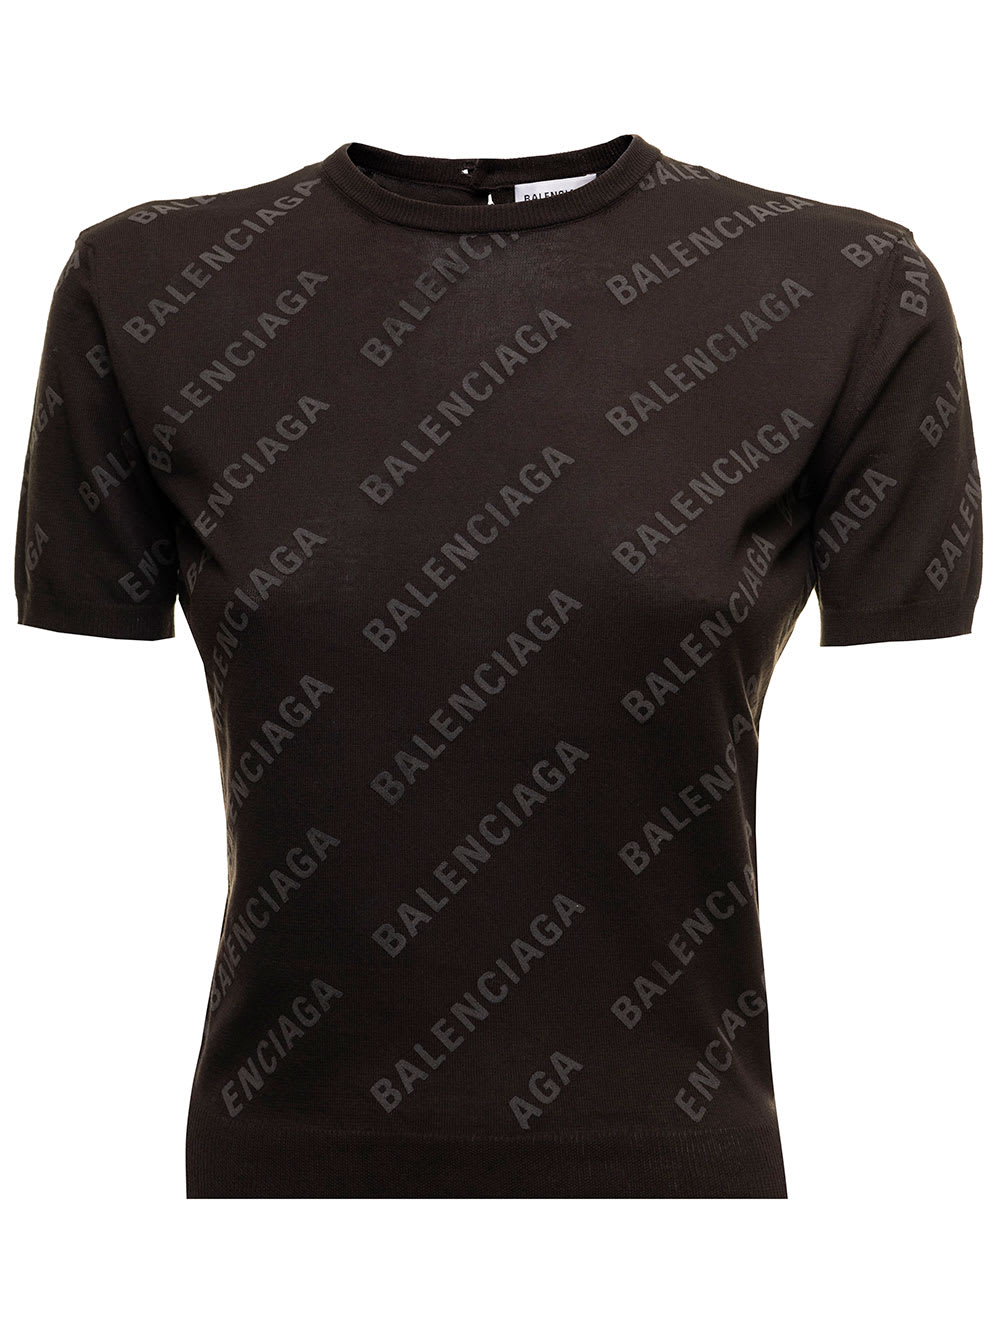 Brown Ultralight Cotton T-shirt With Allover Logo Print Balenciaga Woman